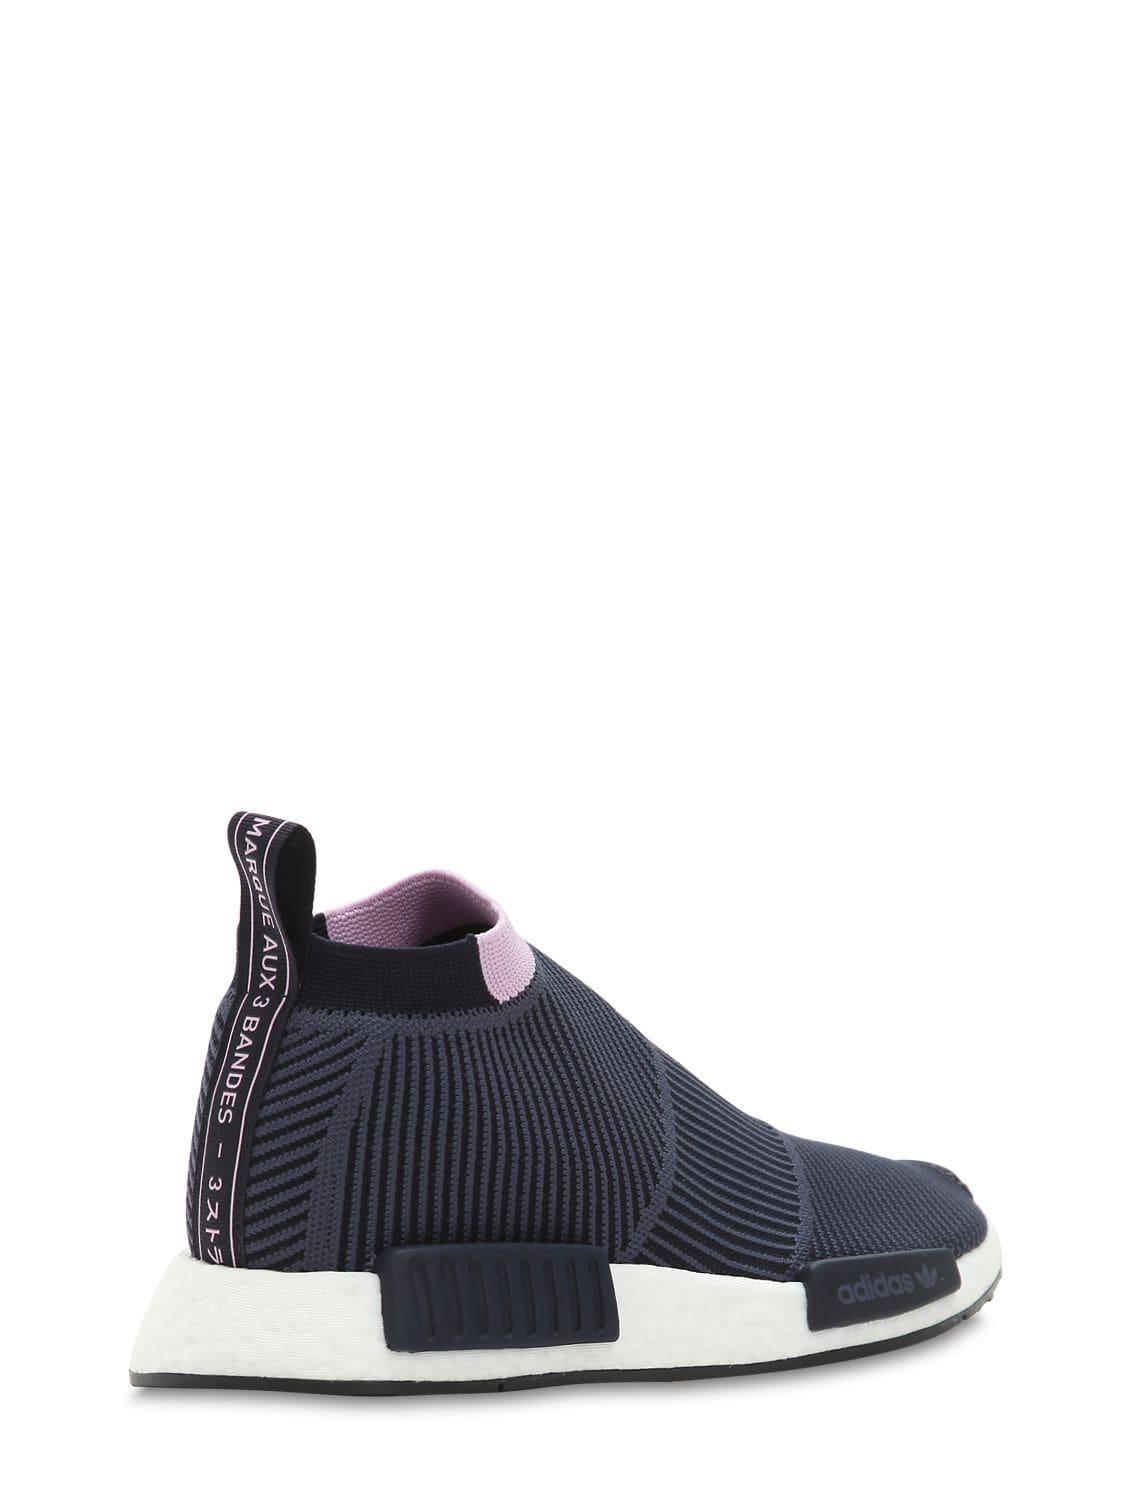 sonido cordura Galleta adidas Originals Nmd Cs1 Primeknit Sneakers in Gray | Lyst